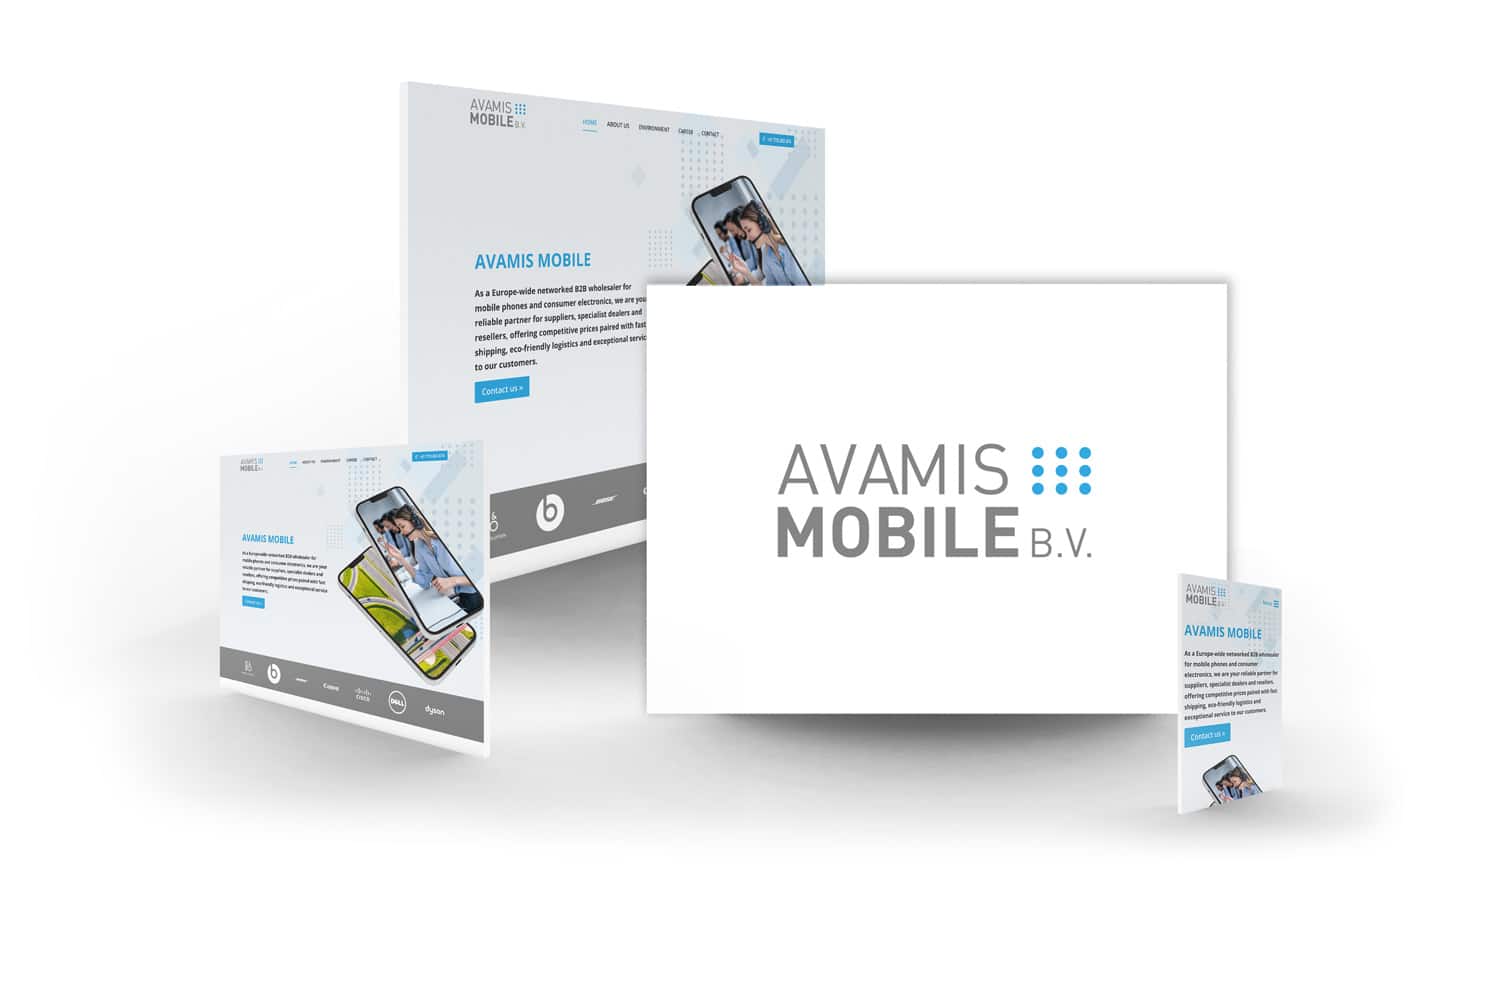 Referenz in Venlo - Avamis Mobile B.V.